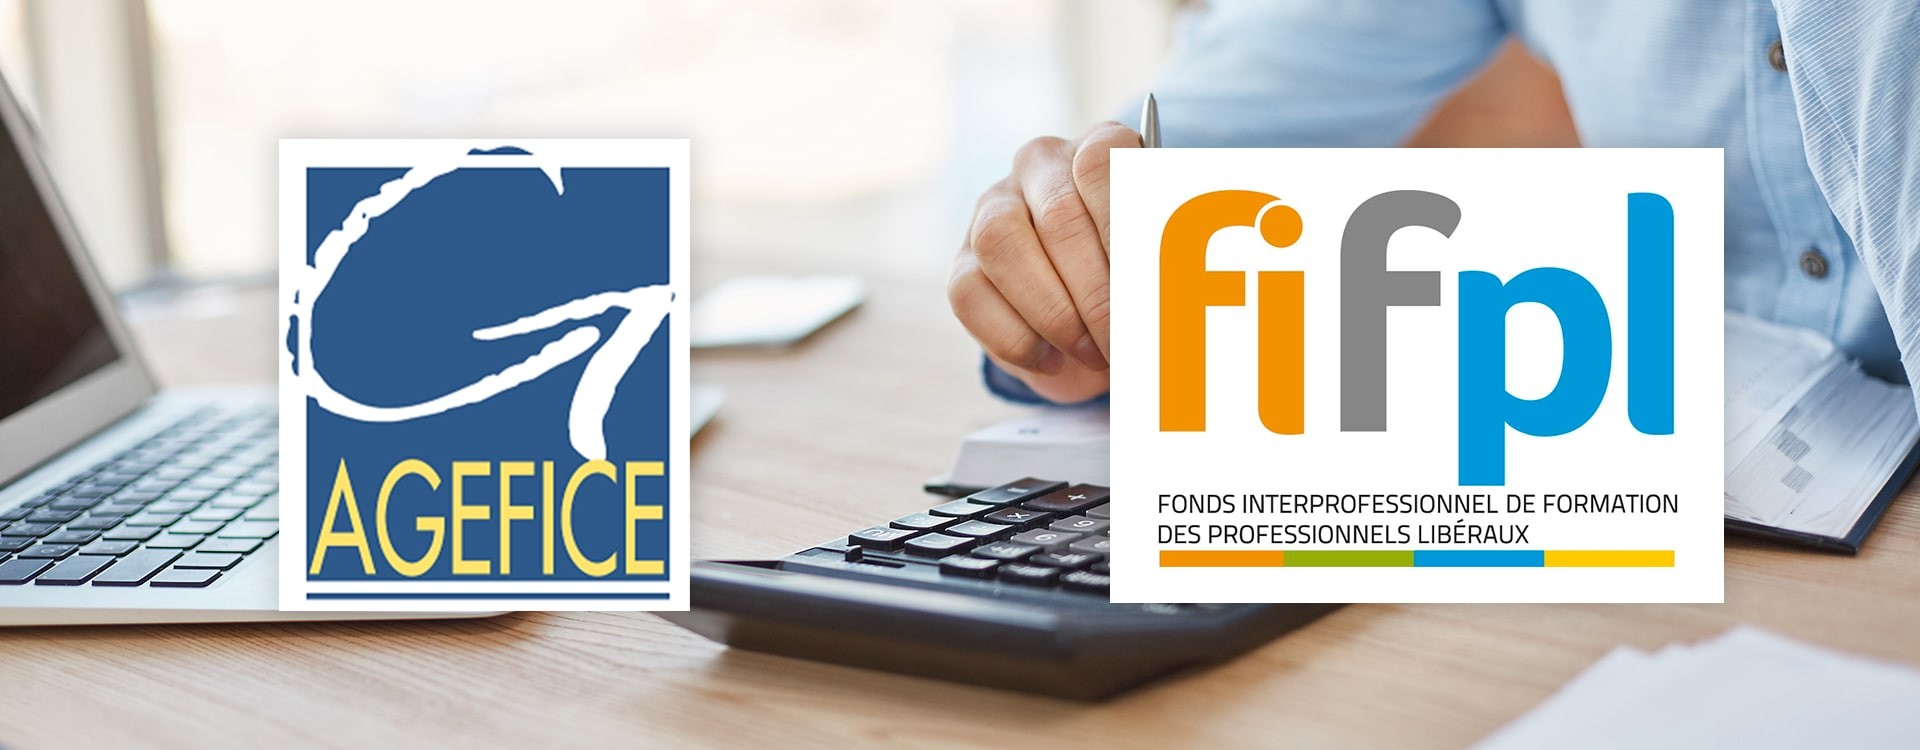 Actualisation des critères de financement AGEFICE et FIFPL pour 2021